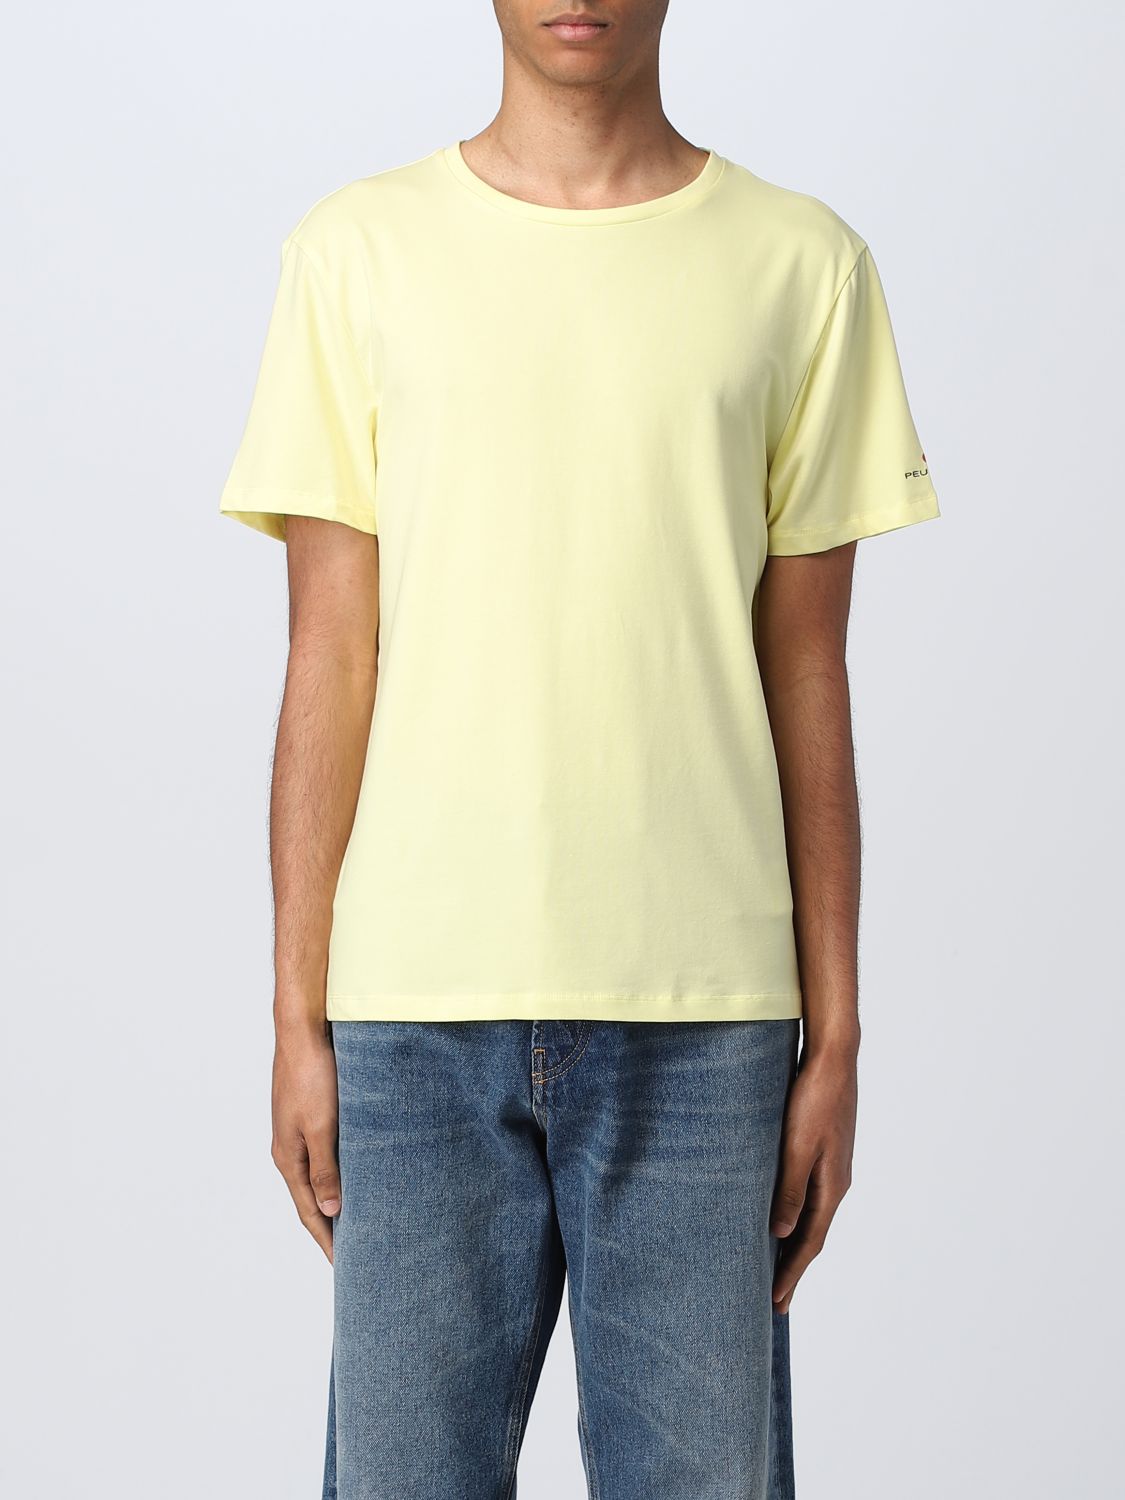 Peuterey T-shirt  Men Color Yellow